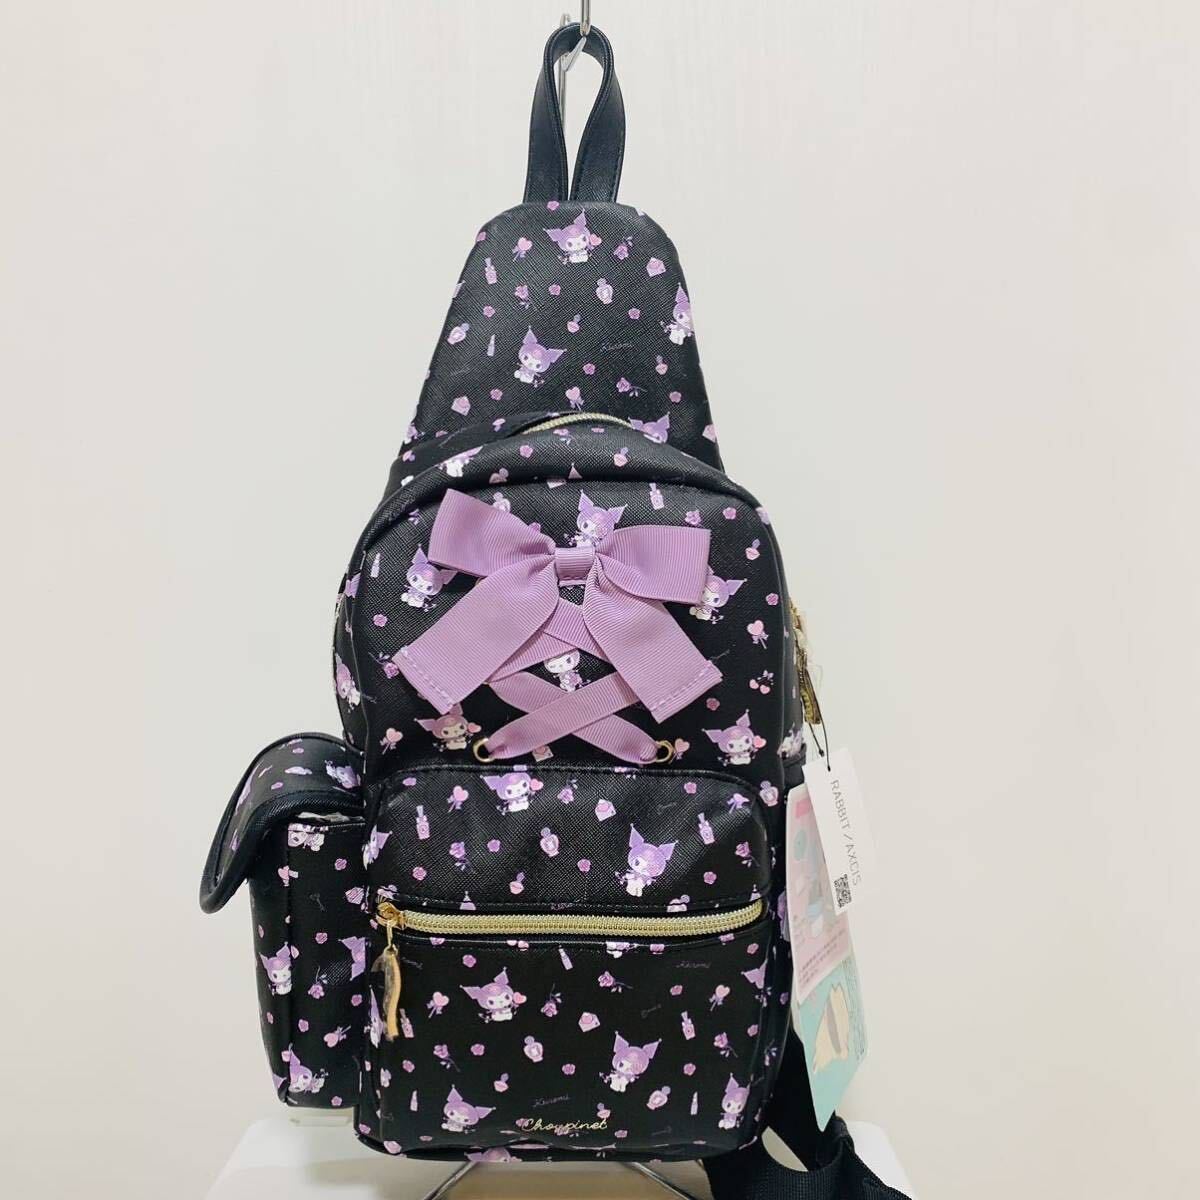  новый товар черный mi чёрный корпус сумка сумка сумка на плечо ученик начальной школы ученик неполной средней школы ученик старшей школы женский 